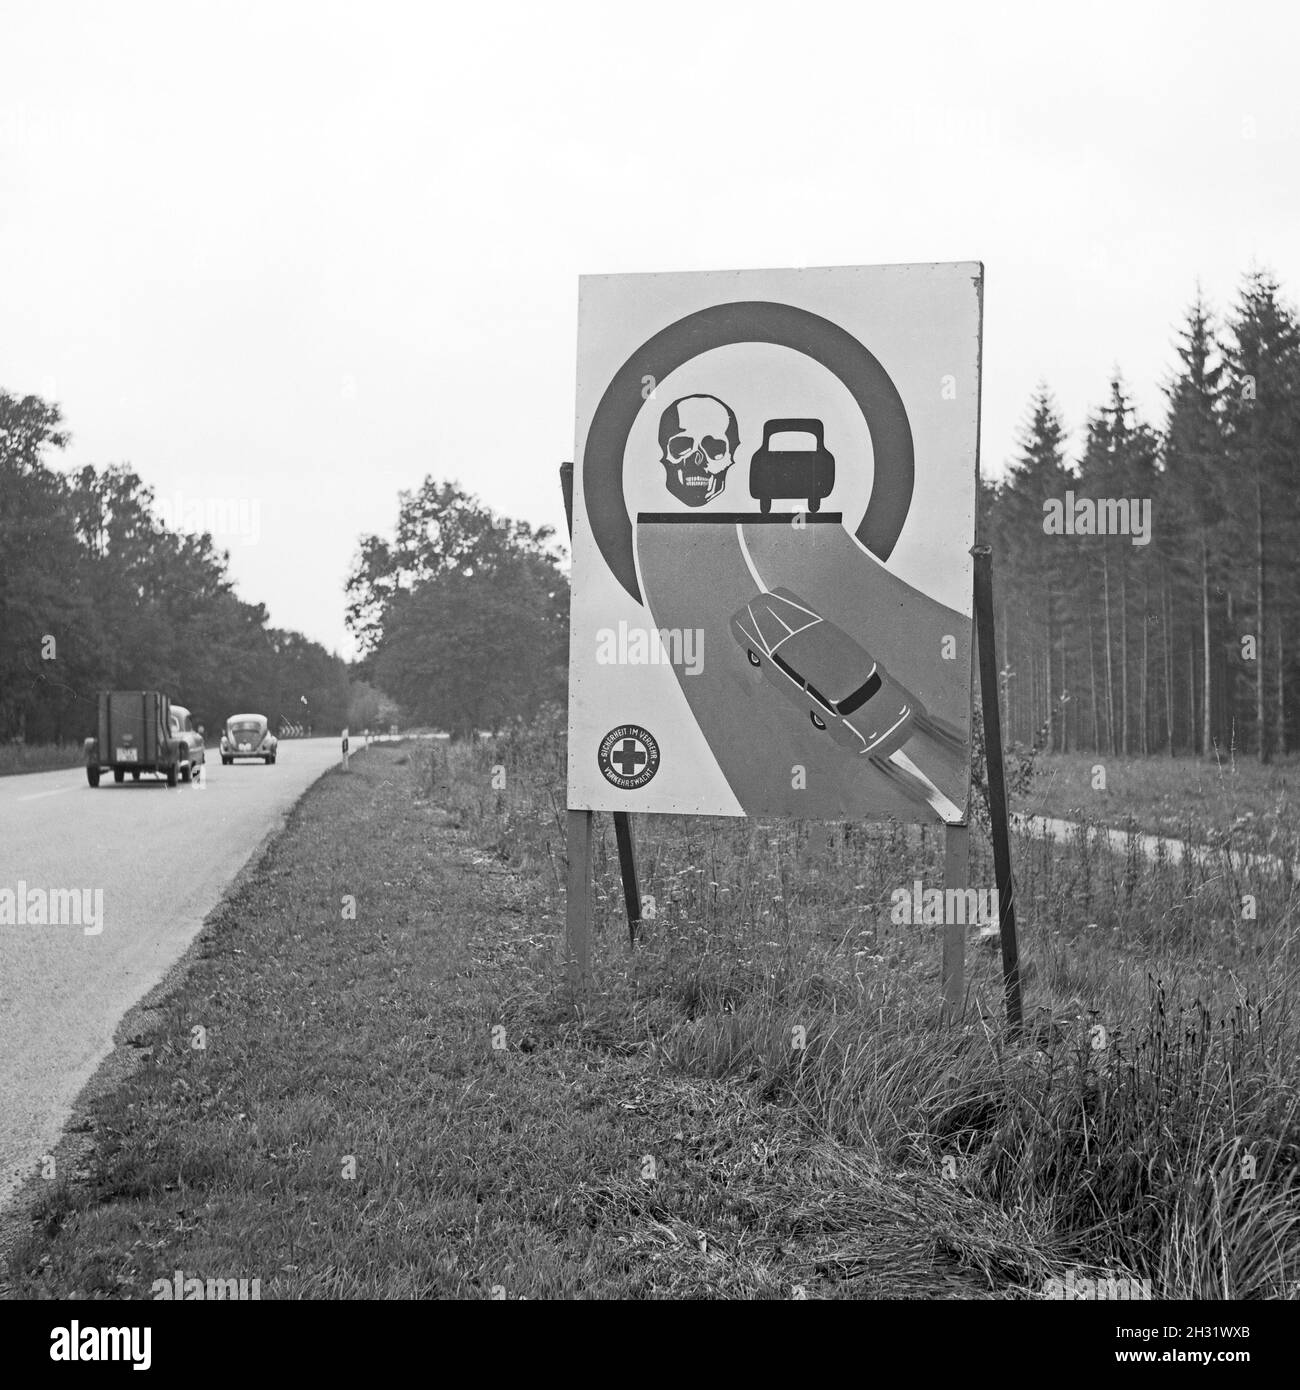 Warnschild 'Kein Überholen in der Kurve' am Straßenrand in Bayern, Deutschland 1959. Cartello stradale in Baviera, Germania 1959. Foto Stock